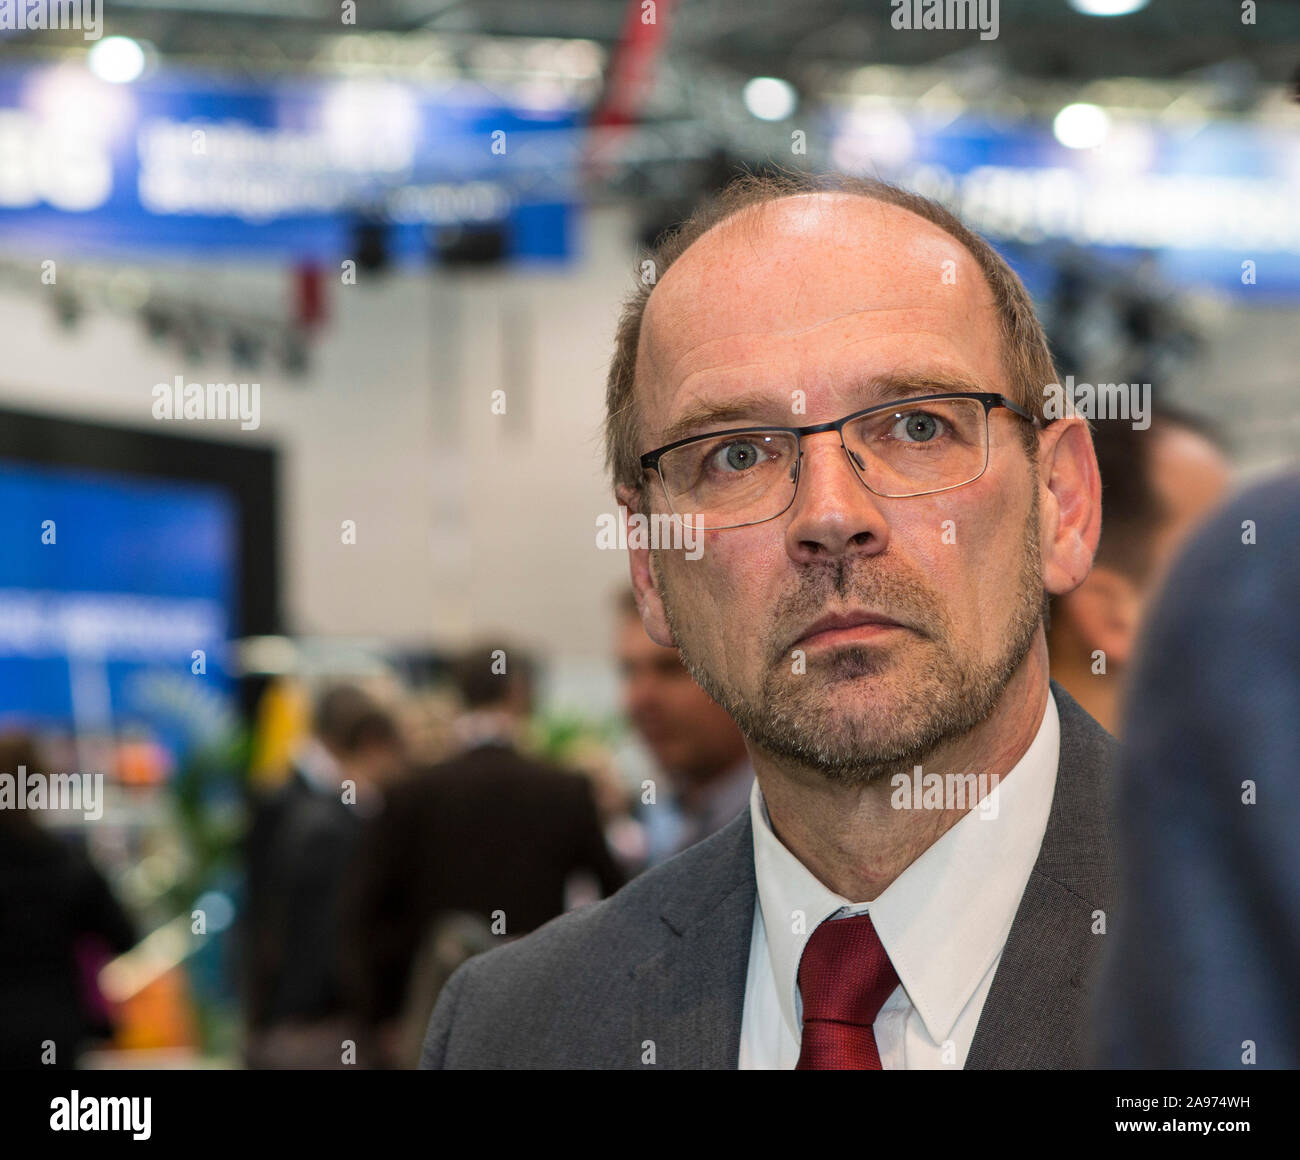 Rainer Schmeltzer – Minister für Arbeit, Integration und Soziales des Landes Nordrhein-Westfalen. Der Minister schaut etwas gedankenverloren in die Fe Stock Photo